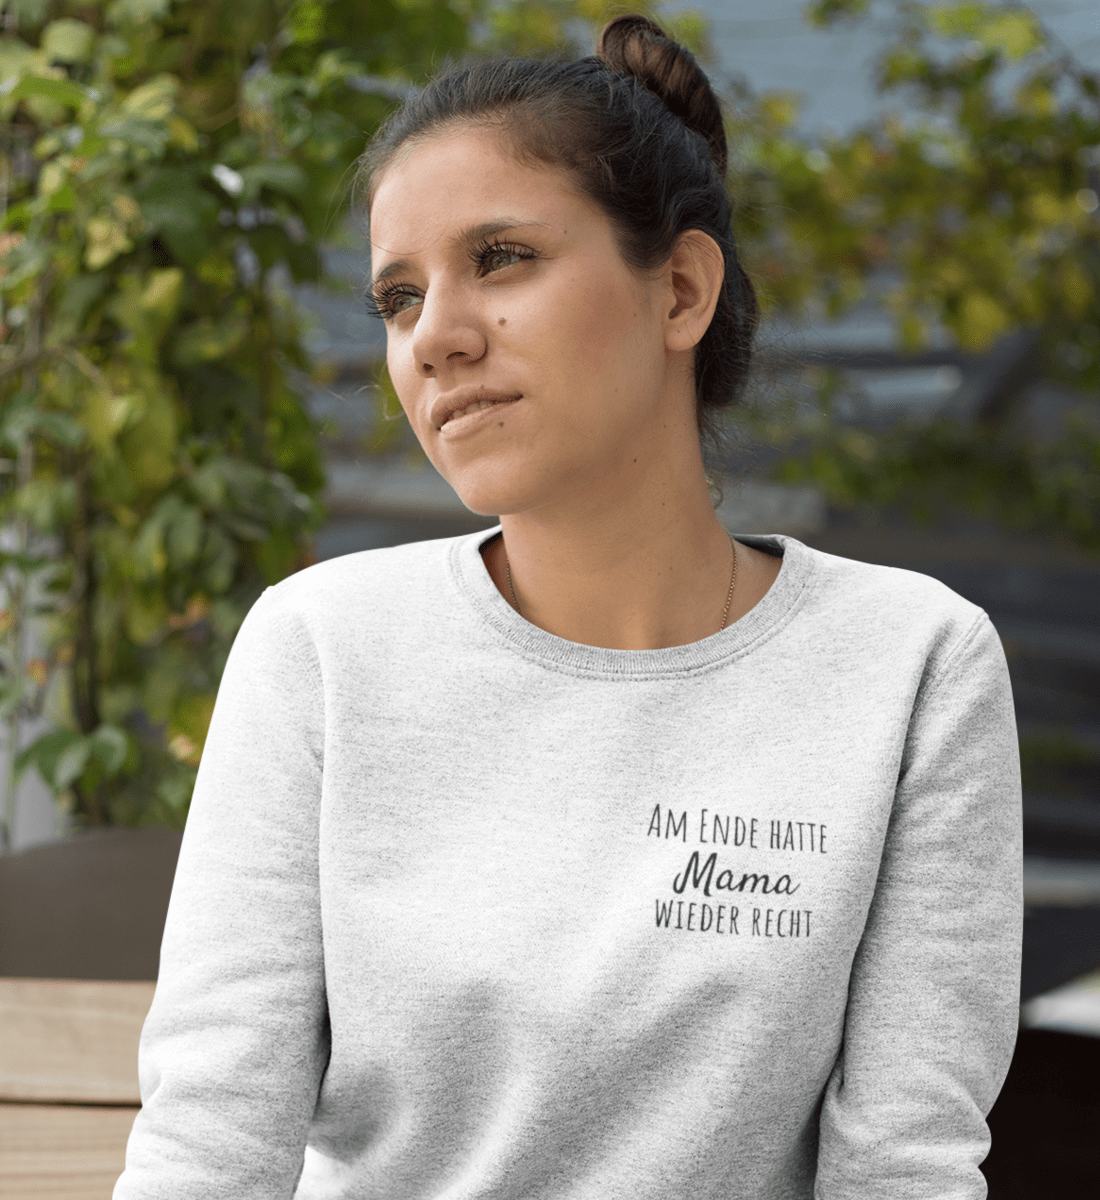 Am Ende hatte Mama wieder recht  - Premium Organic Sweatshirt